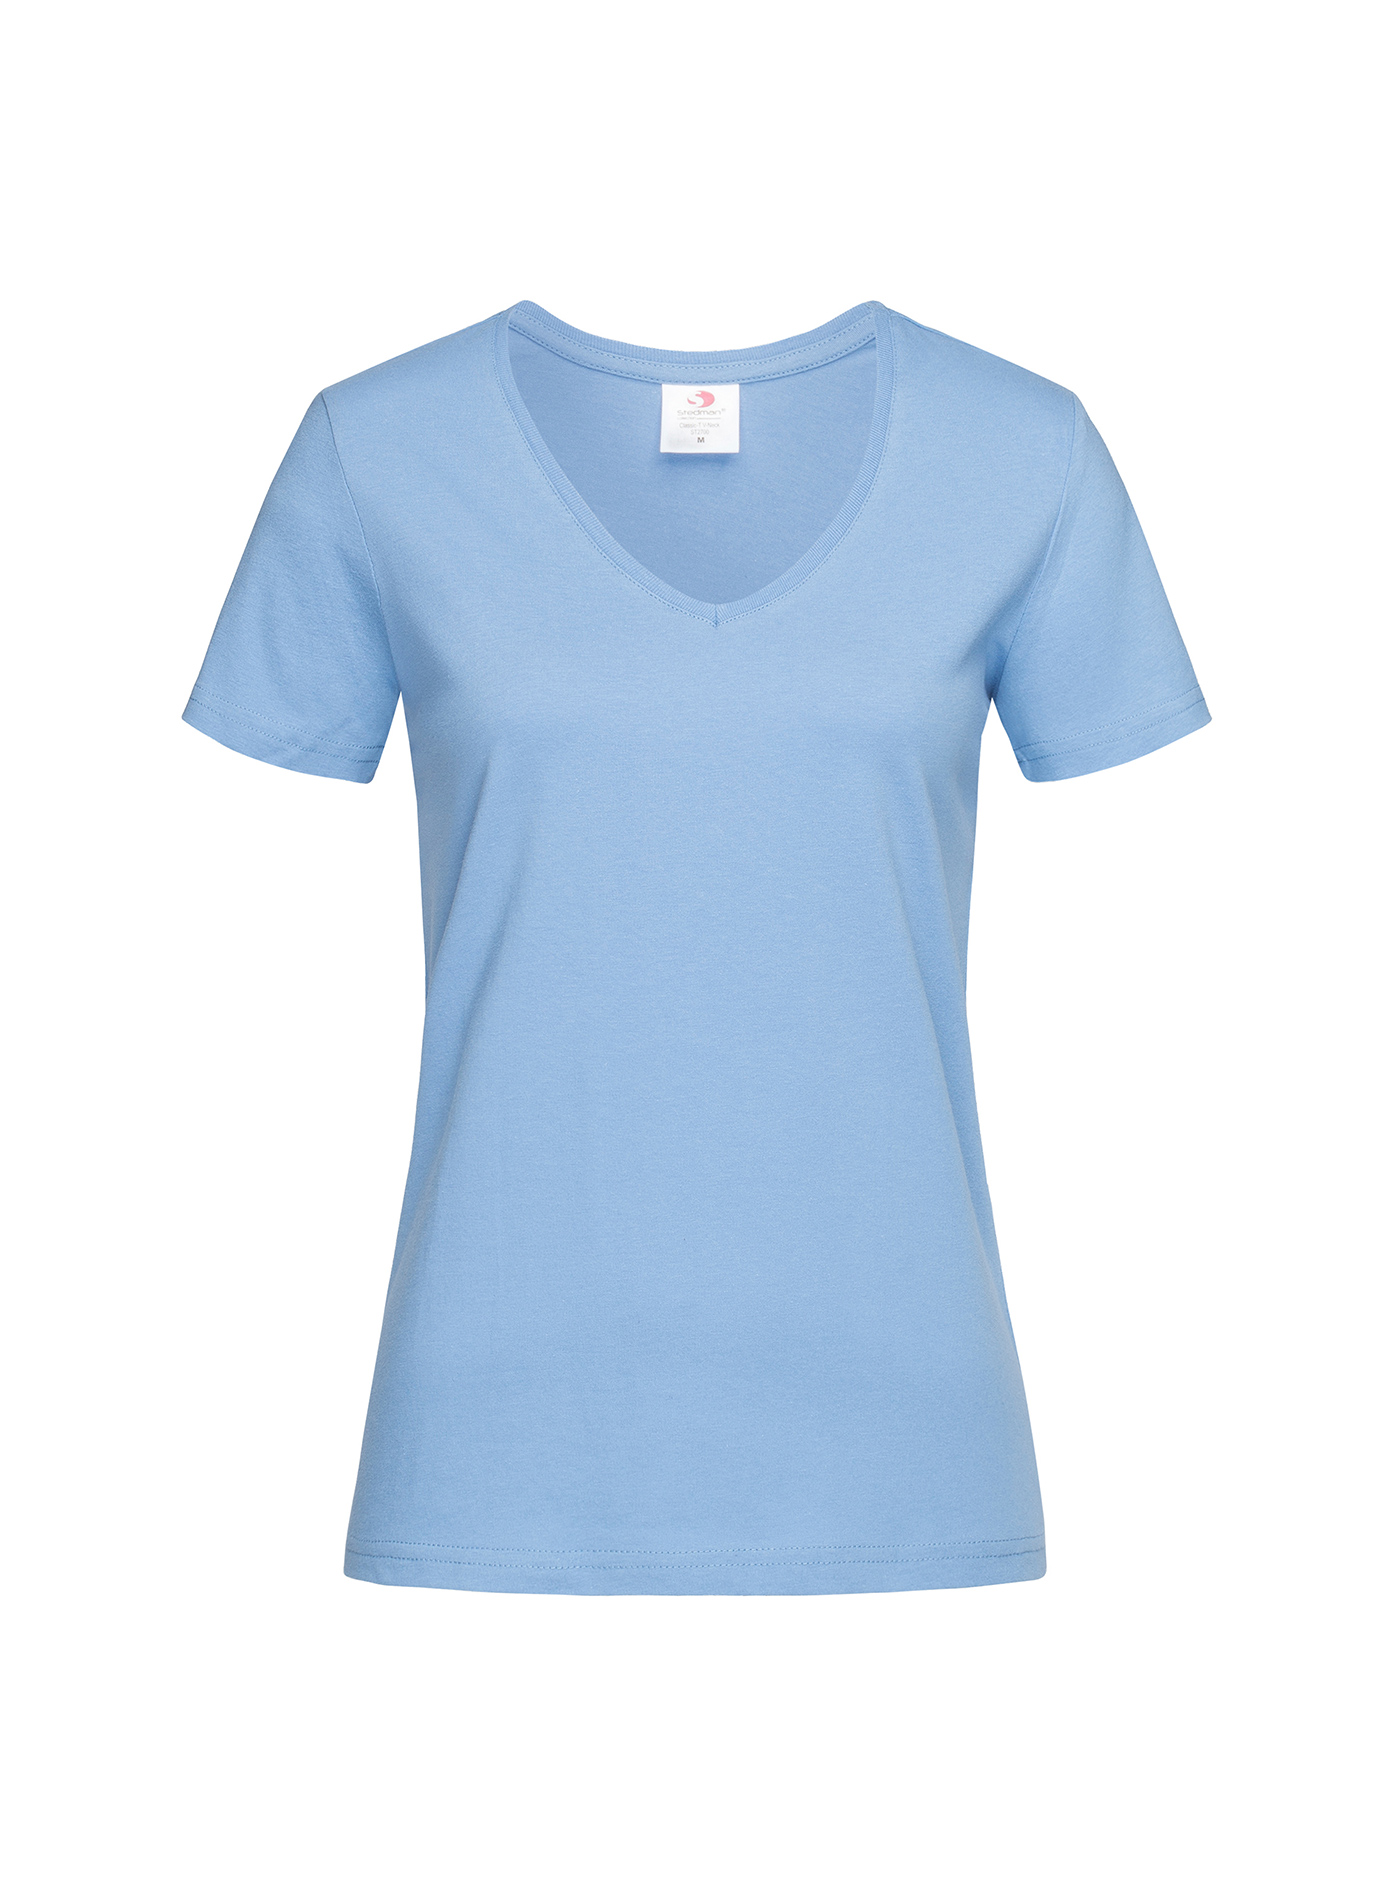 Dámské tričko s V-výstřihem Stedman - světle modrá L